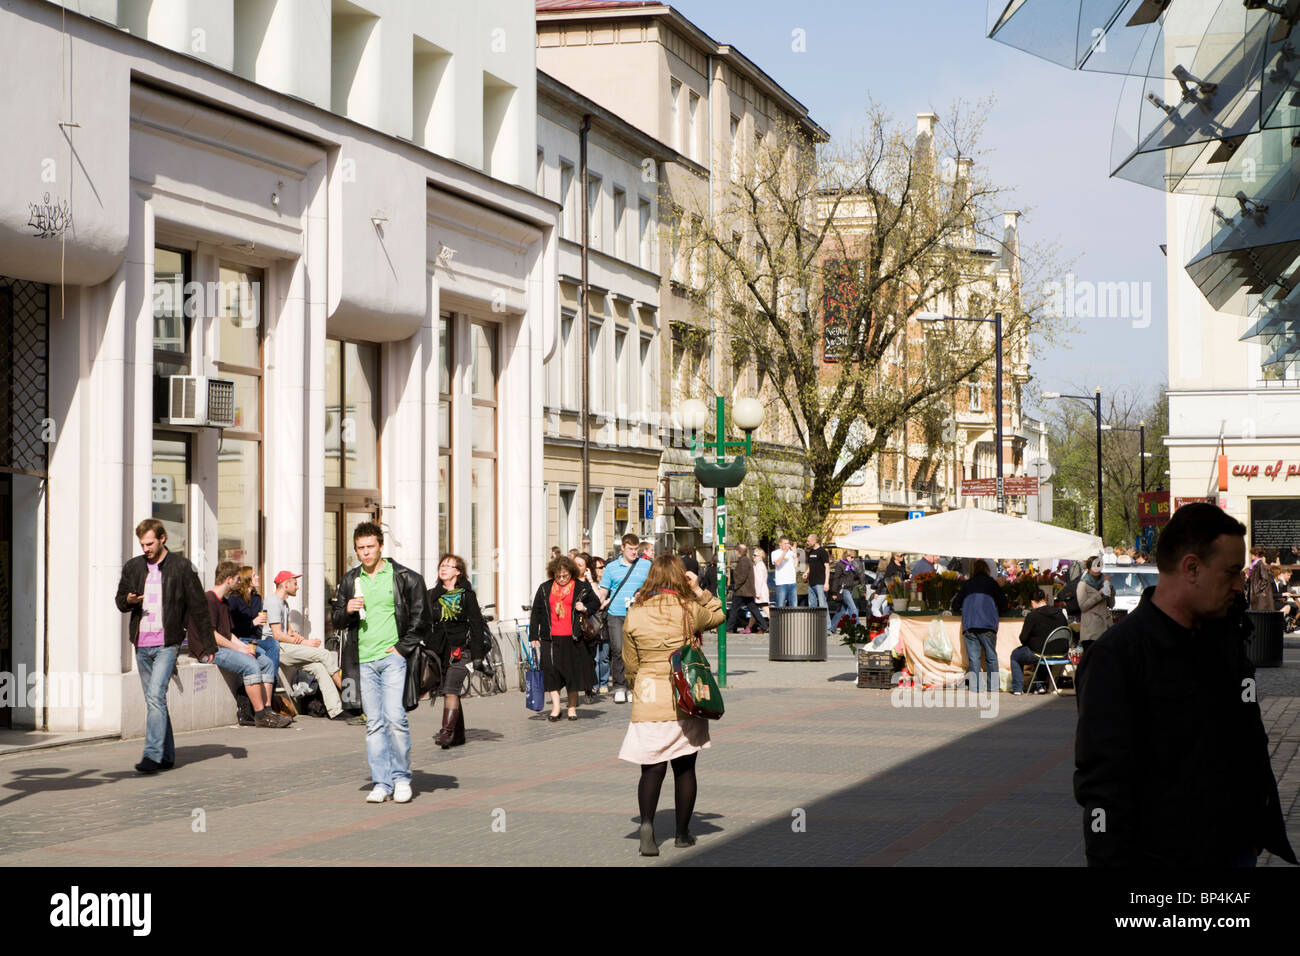 Chmielna street, Warsaw Poland Stock Photo - Alamy